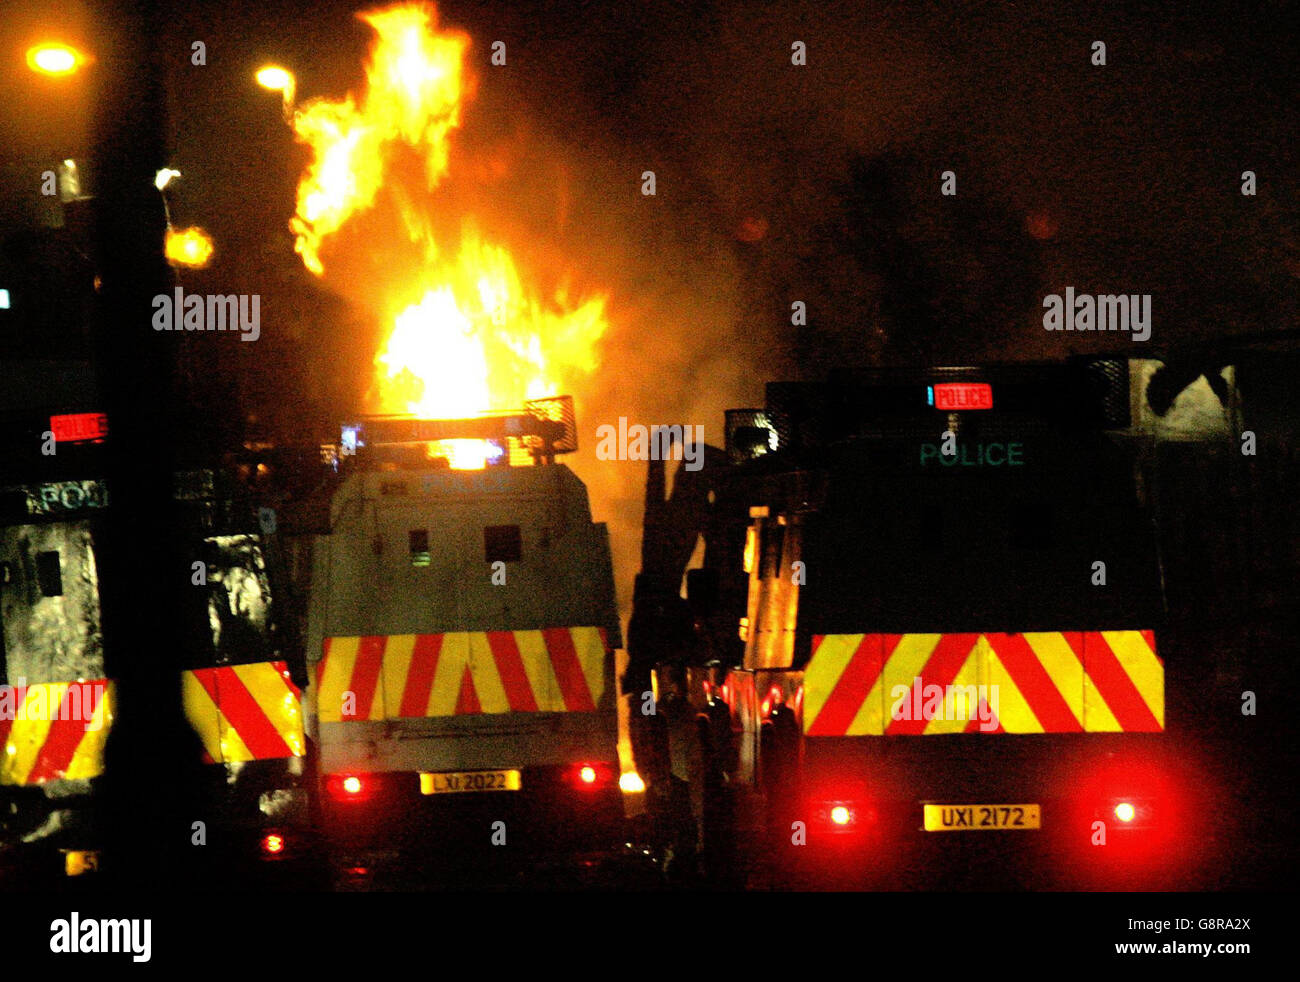 Fahrzeuge brennen in Nord-Belfast, Nordirland Montag, 12. September 2005. Loyalist-Benzinbomber griffen heute Abend eine Polizeiwache in Belfast an, als erneut Gewalt auf den Straßen der Stadt aufflammte. In der dritten Nacht der Unruhen wurden Autos in Brand gesetzt und die Hauptstraßen geschlossen. Mobs gingen zurück auf den Rampage, nachdem Demonstranten das Chaos der Hauptverkehrszeit auf den Routen aus der Stadt gebracht hatten. Siehe PA Geschichte ULSTER Gewalt. DRÜCKEN SIE VERBANDSFOTO. Bildnachweis sollte lauten: PA Stockfoto